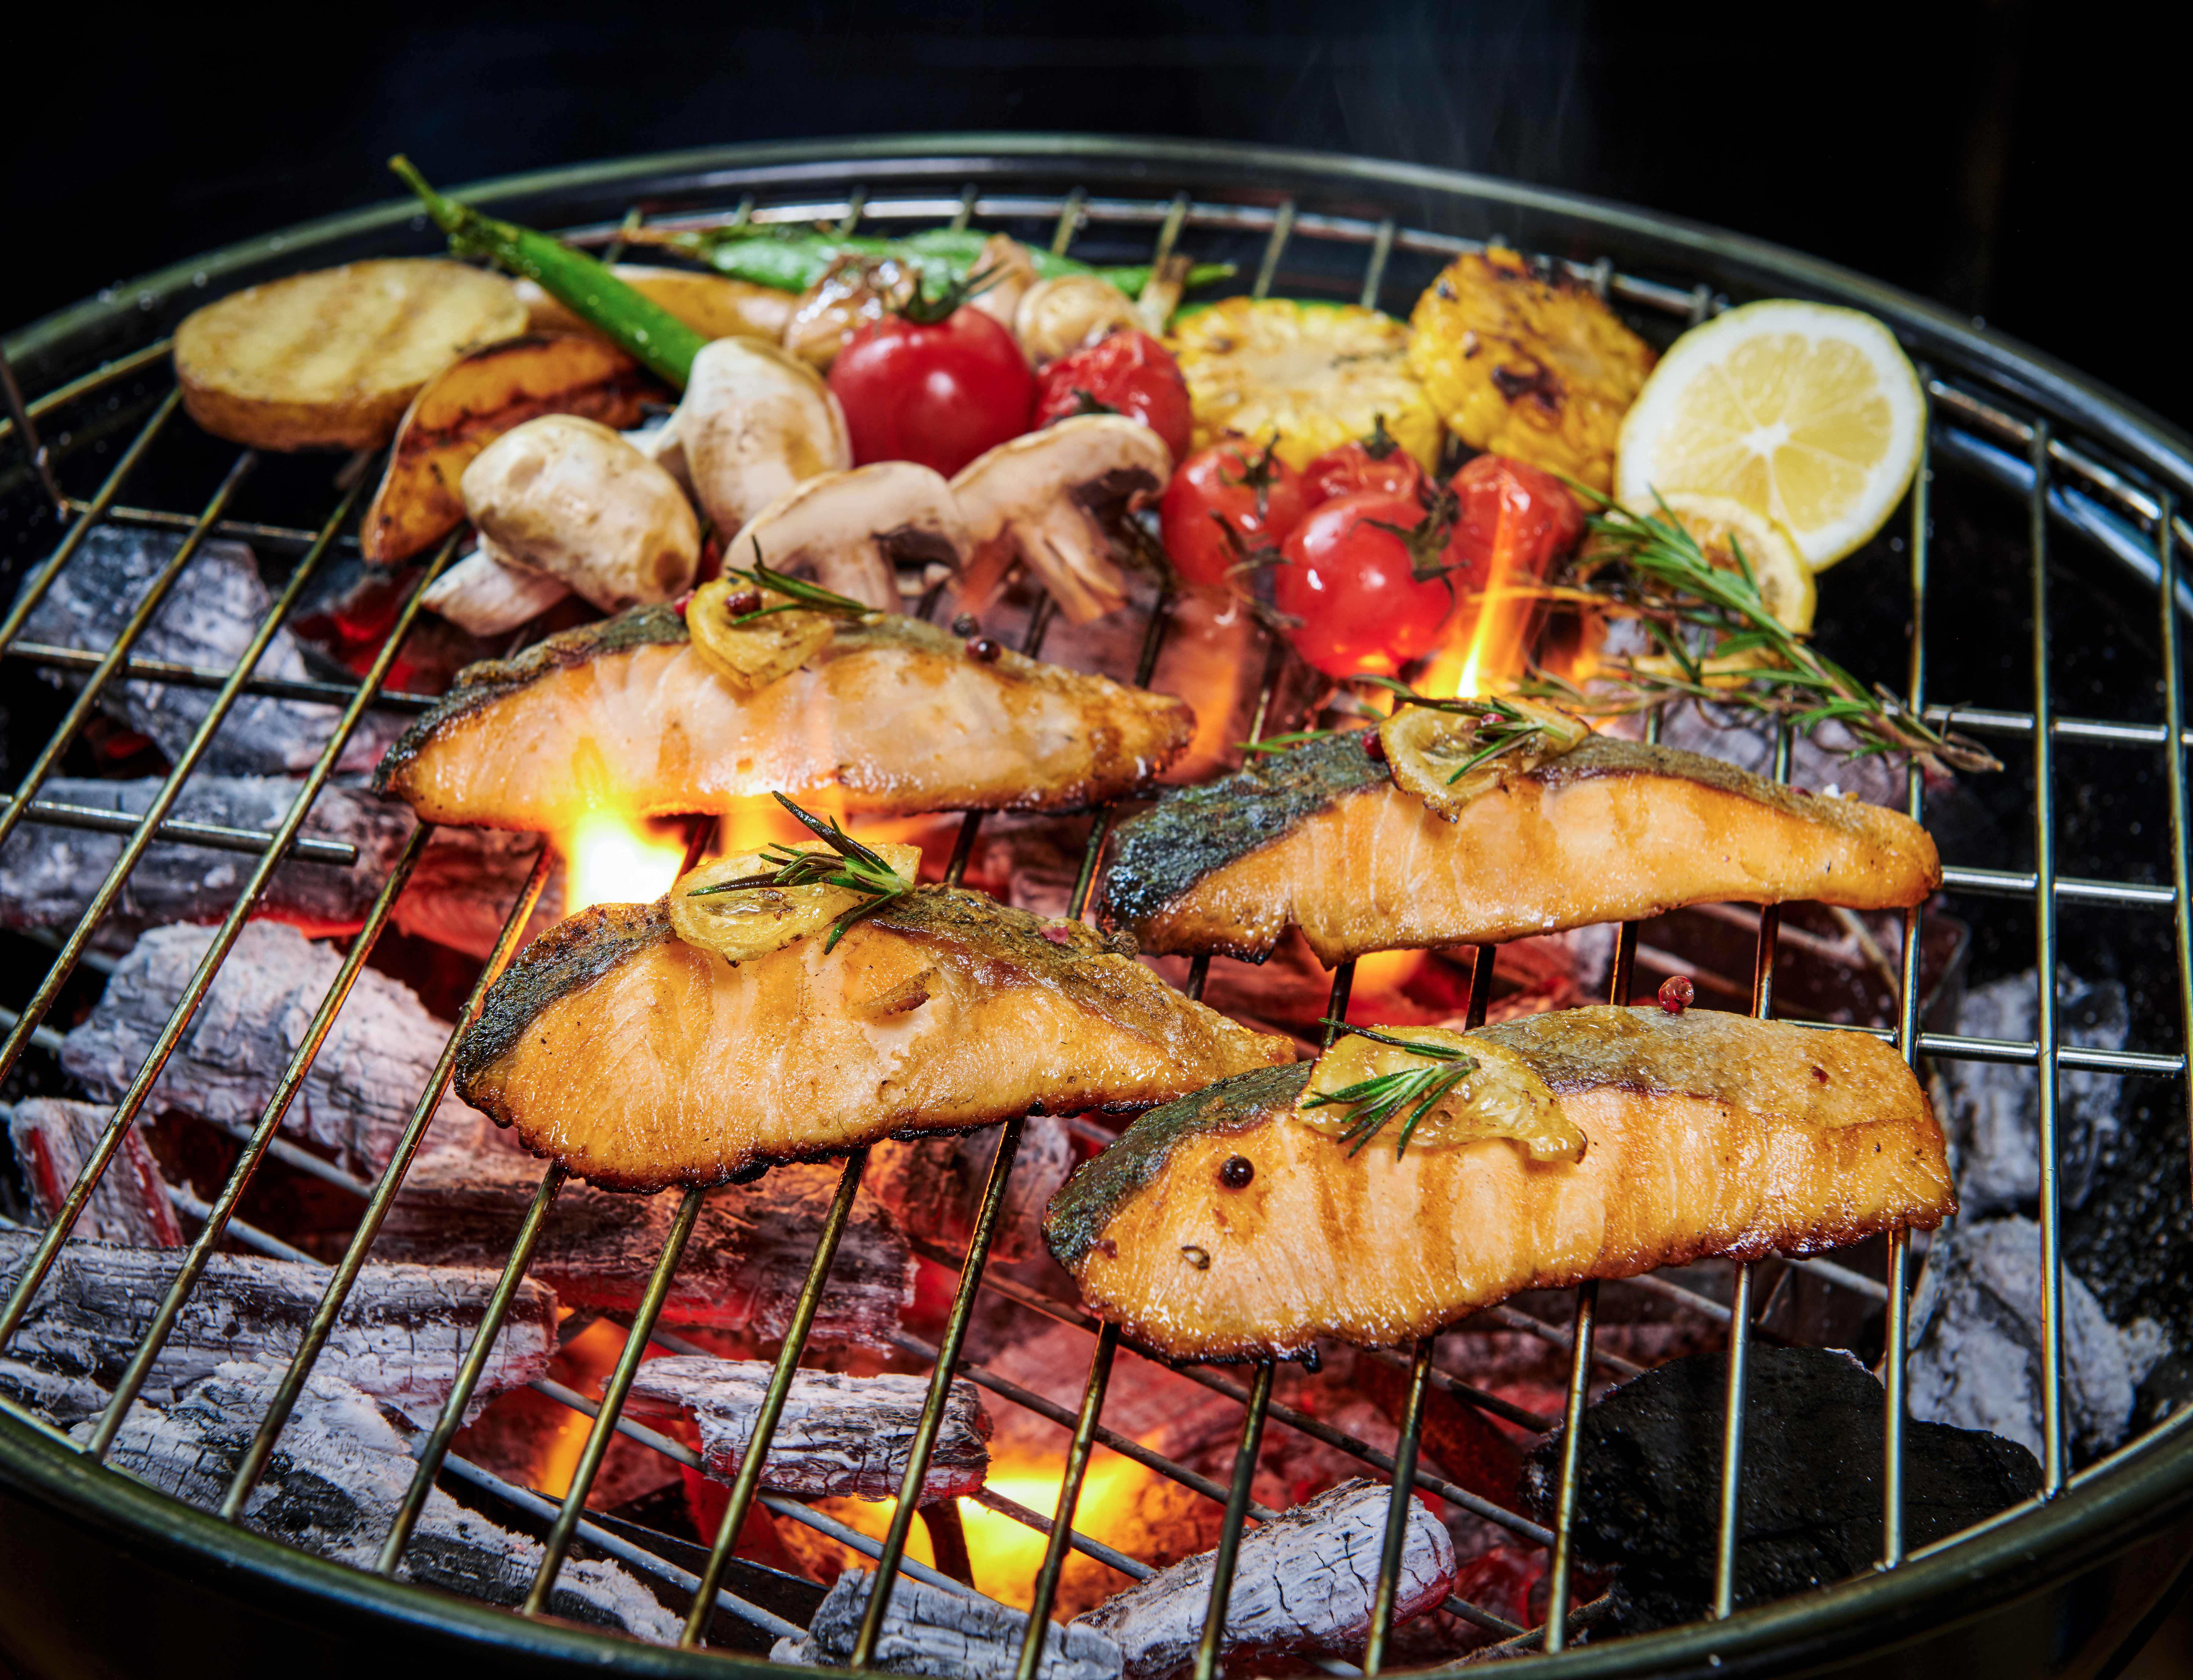 Erfahre, wie du Fisch perfekt zubereitest! Entdecke die Kerntemperaturen für saftige Delikatessen. Jetzt Tipps holen & genießen!